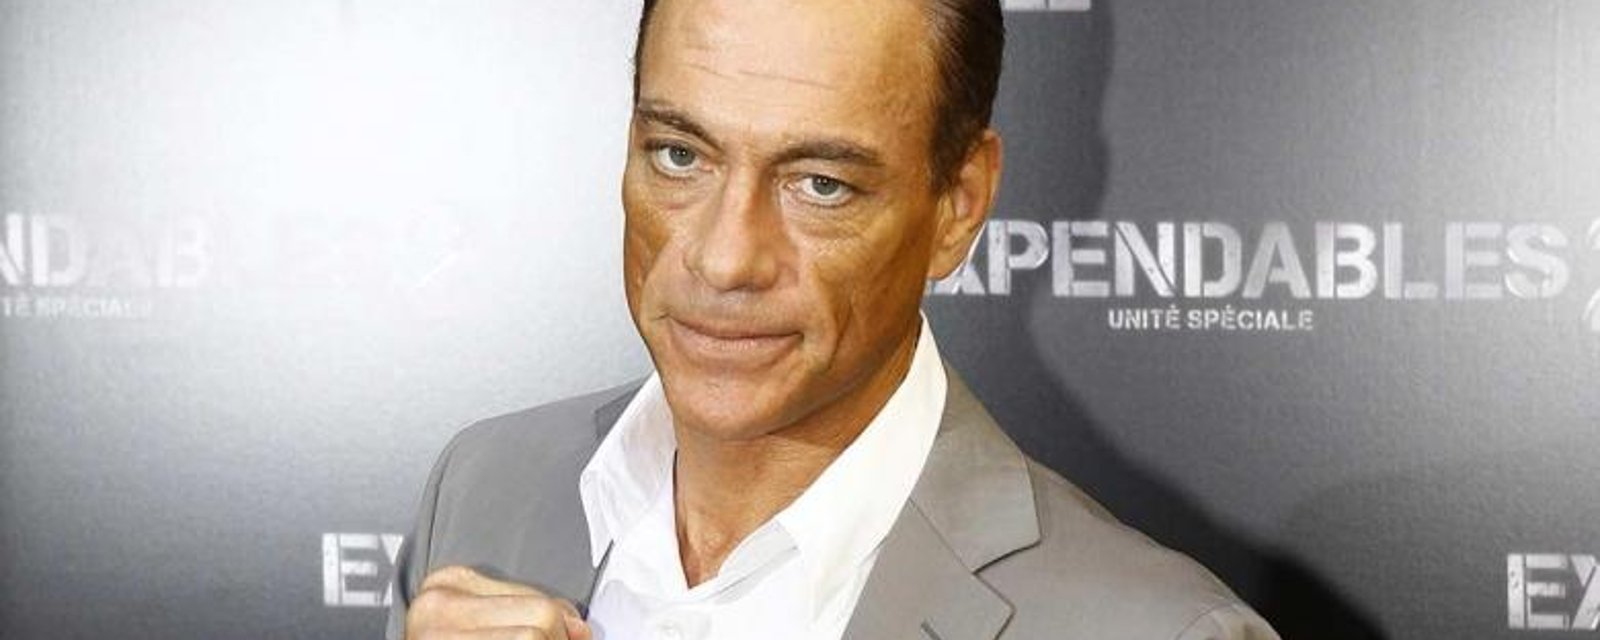 La fille de Jean-Claude Van Damme est plus que sexy... elle est une dure!